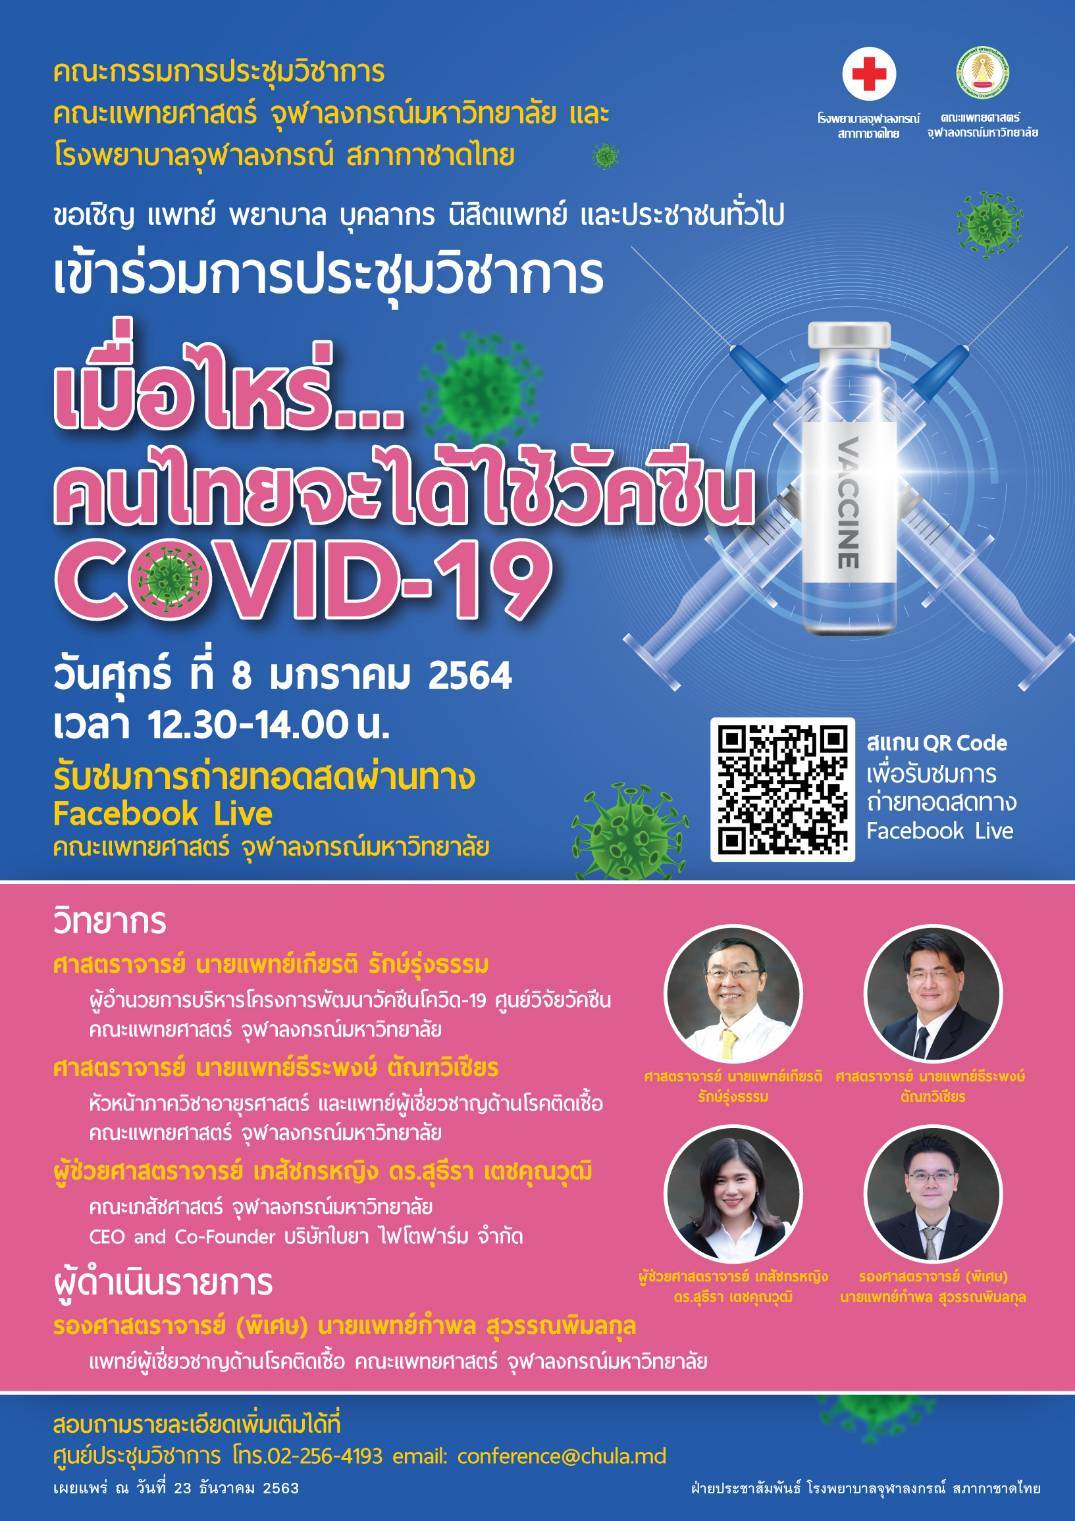 การประชุมวิชาการ เมื่อใหร่.. คนไทยจะได้ใช้วัคซีน COVID-19